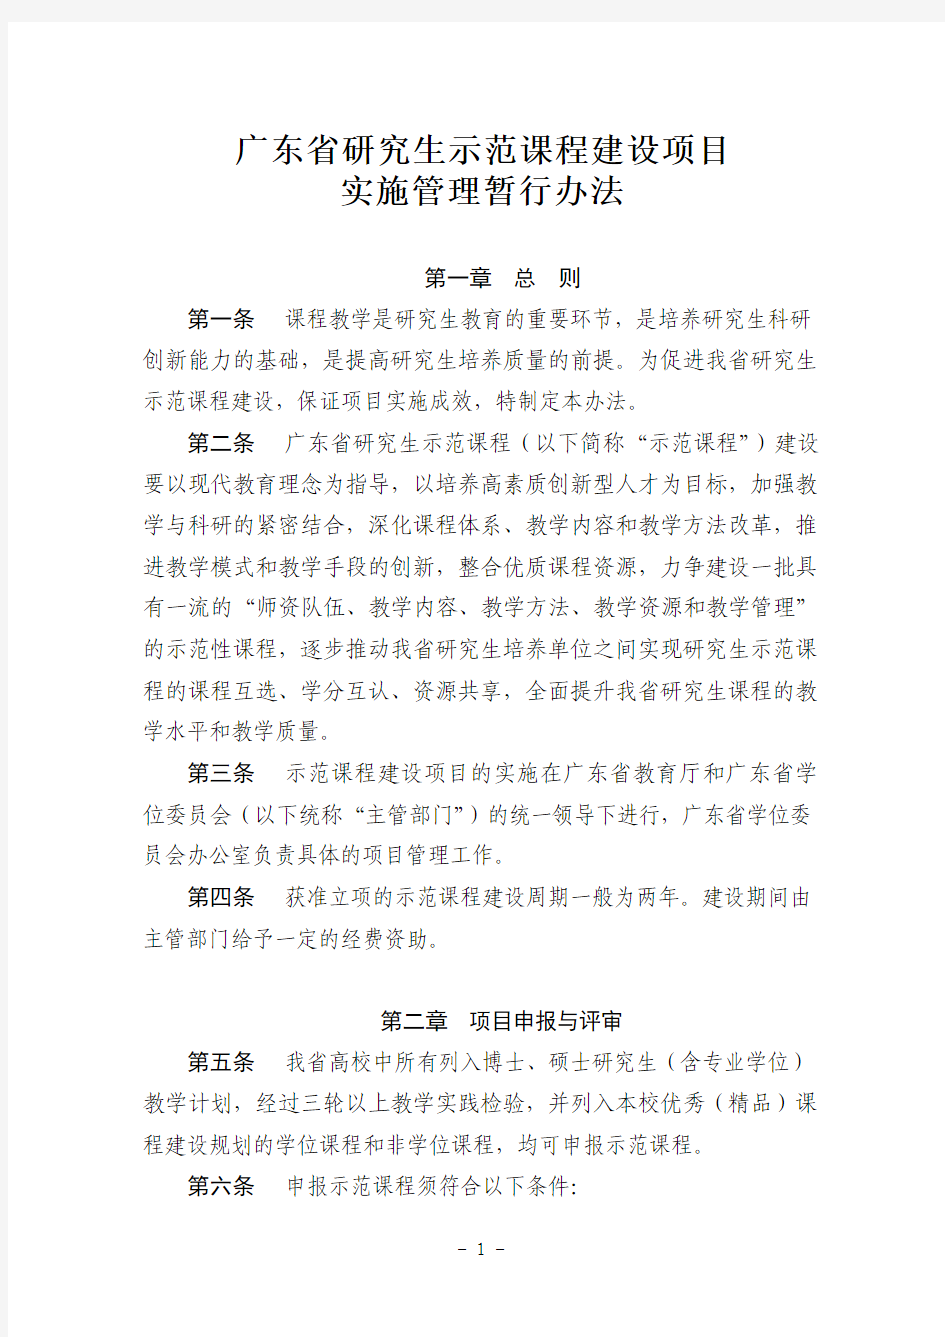 广东省研究生示范课程建设项目实施管理暂行办法